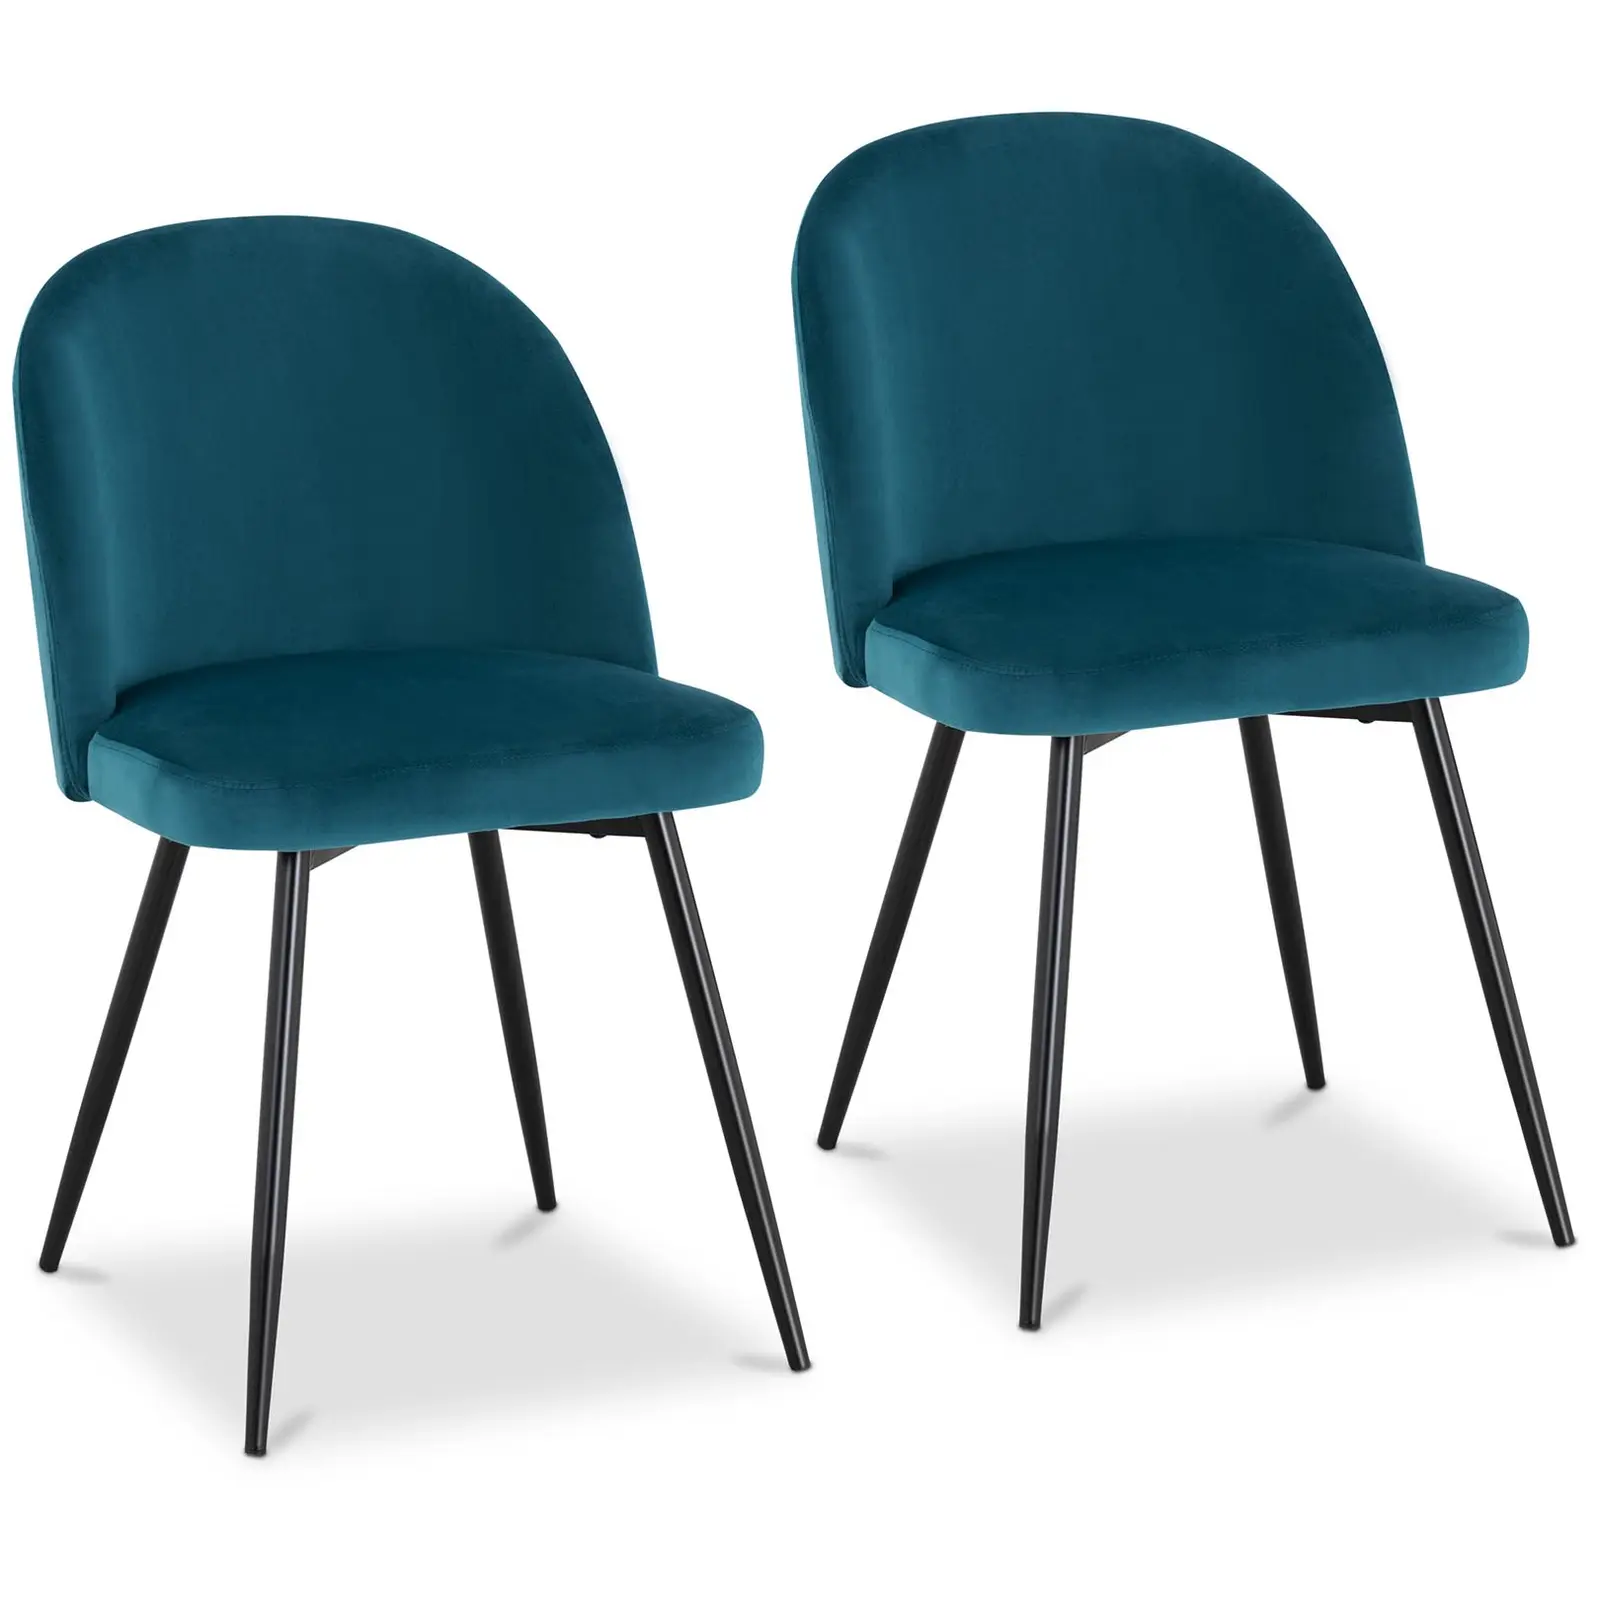 Sedie imbottite con gambe in metallo - Set da 2 - Fino a 150 kg - Superficie di seduta di 48 x 41,5 cm - Turchese